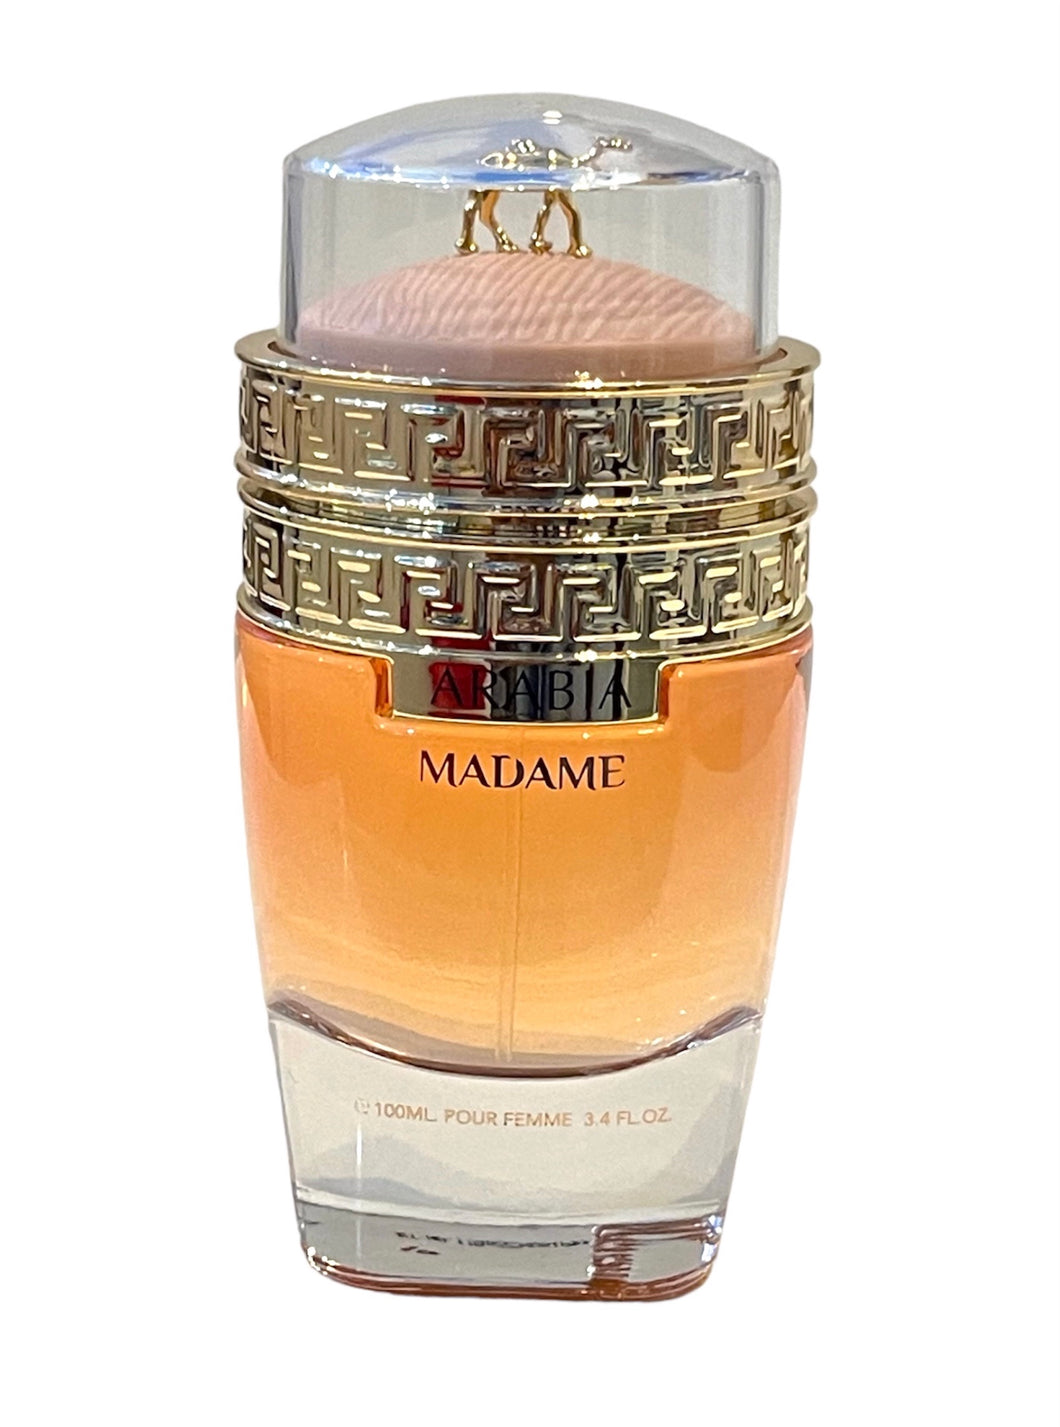 arabia madame pour femme by le chameau eau de parfum for womens - alwaysspecialgifts.com